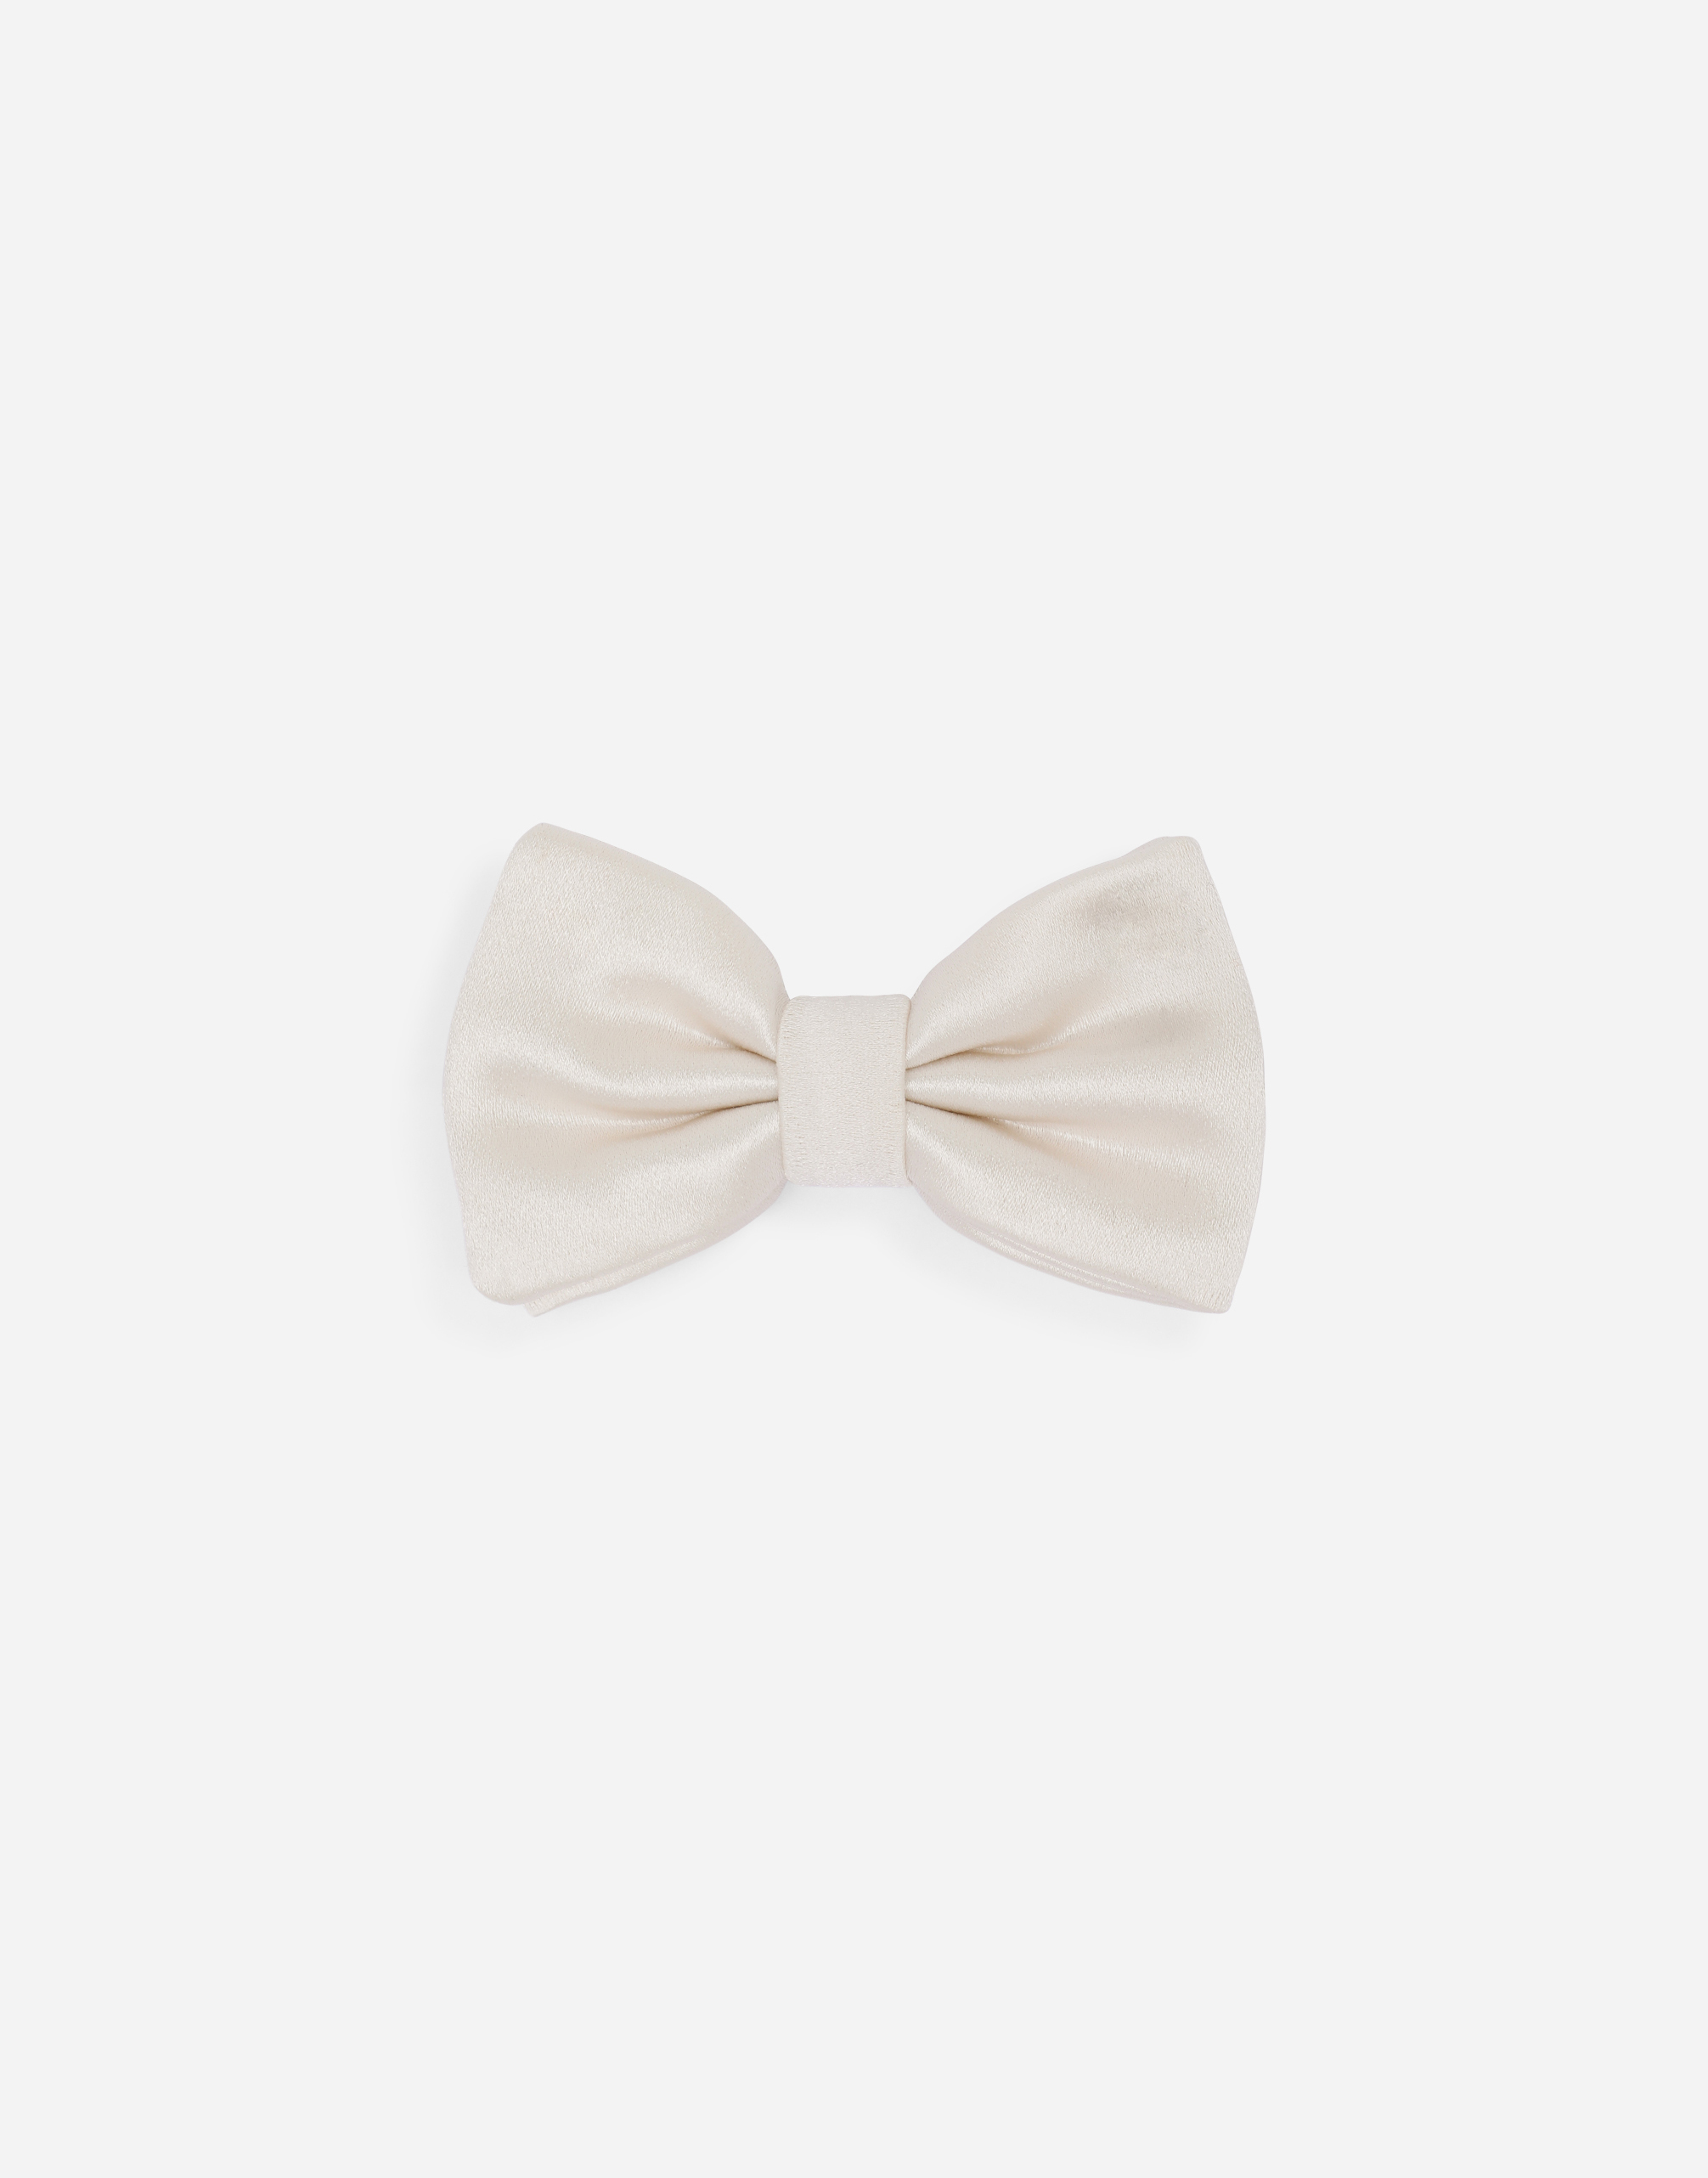 Silk duchesse bow tie in White